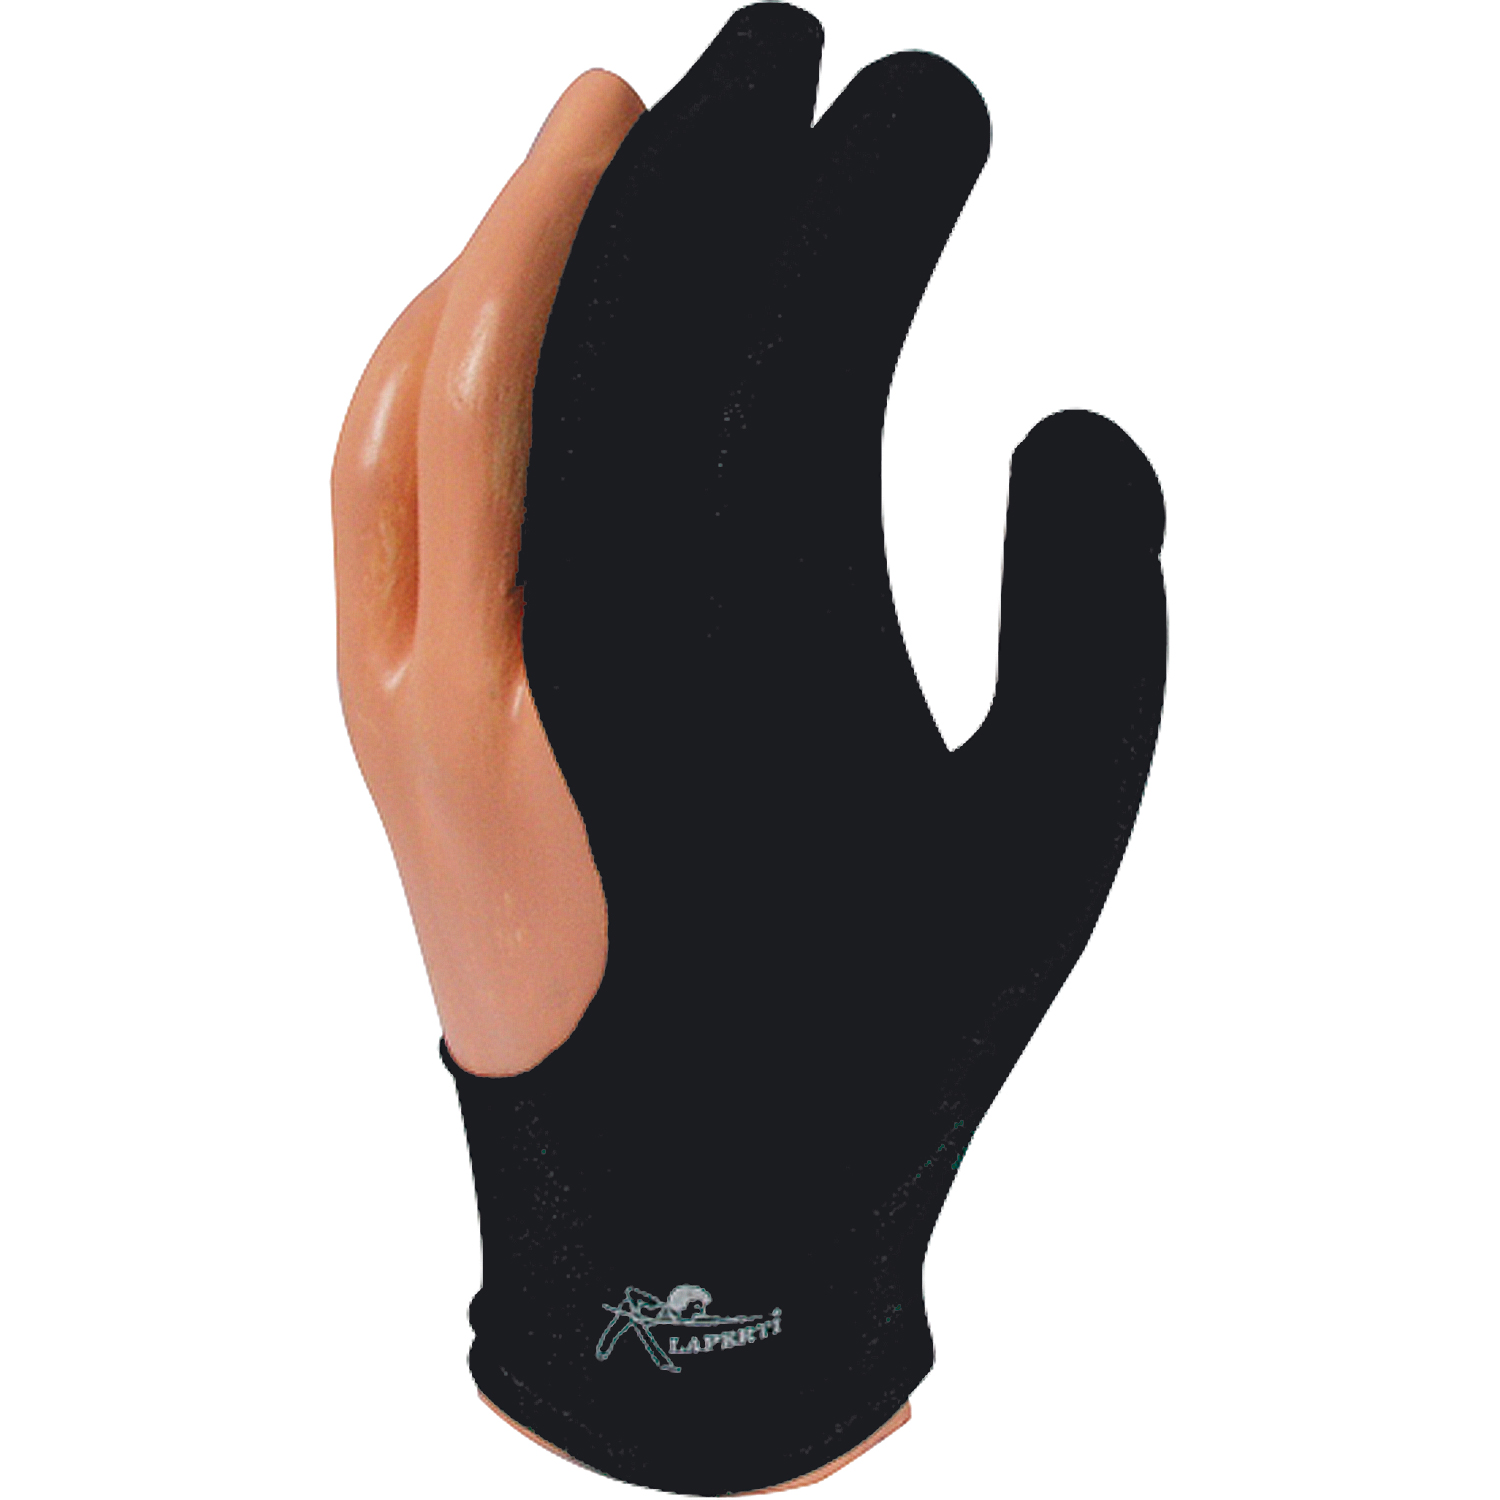 Glove Laperti black, medium